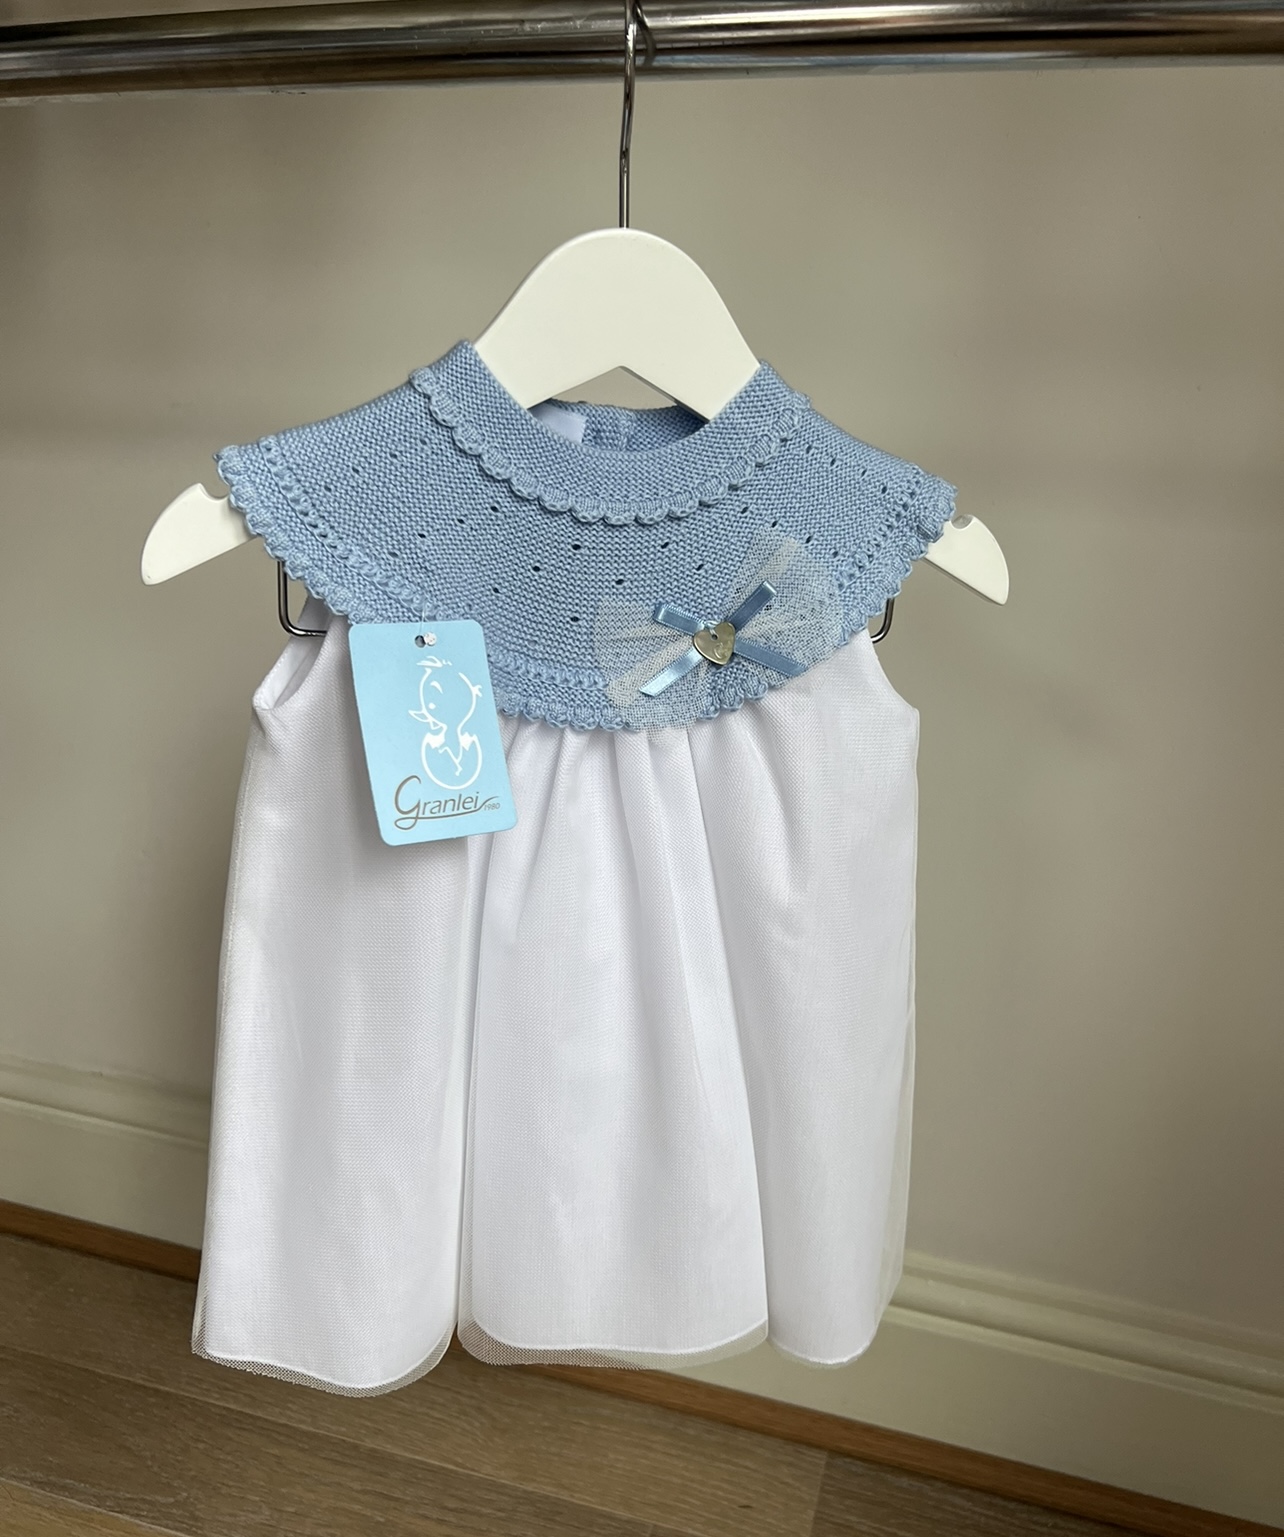 Granlei Blue Bow Knit Dress